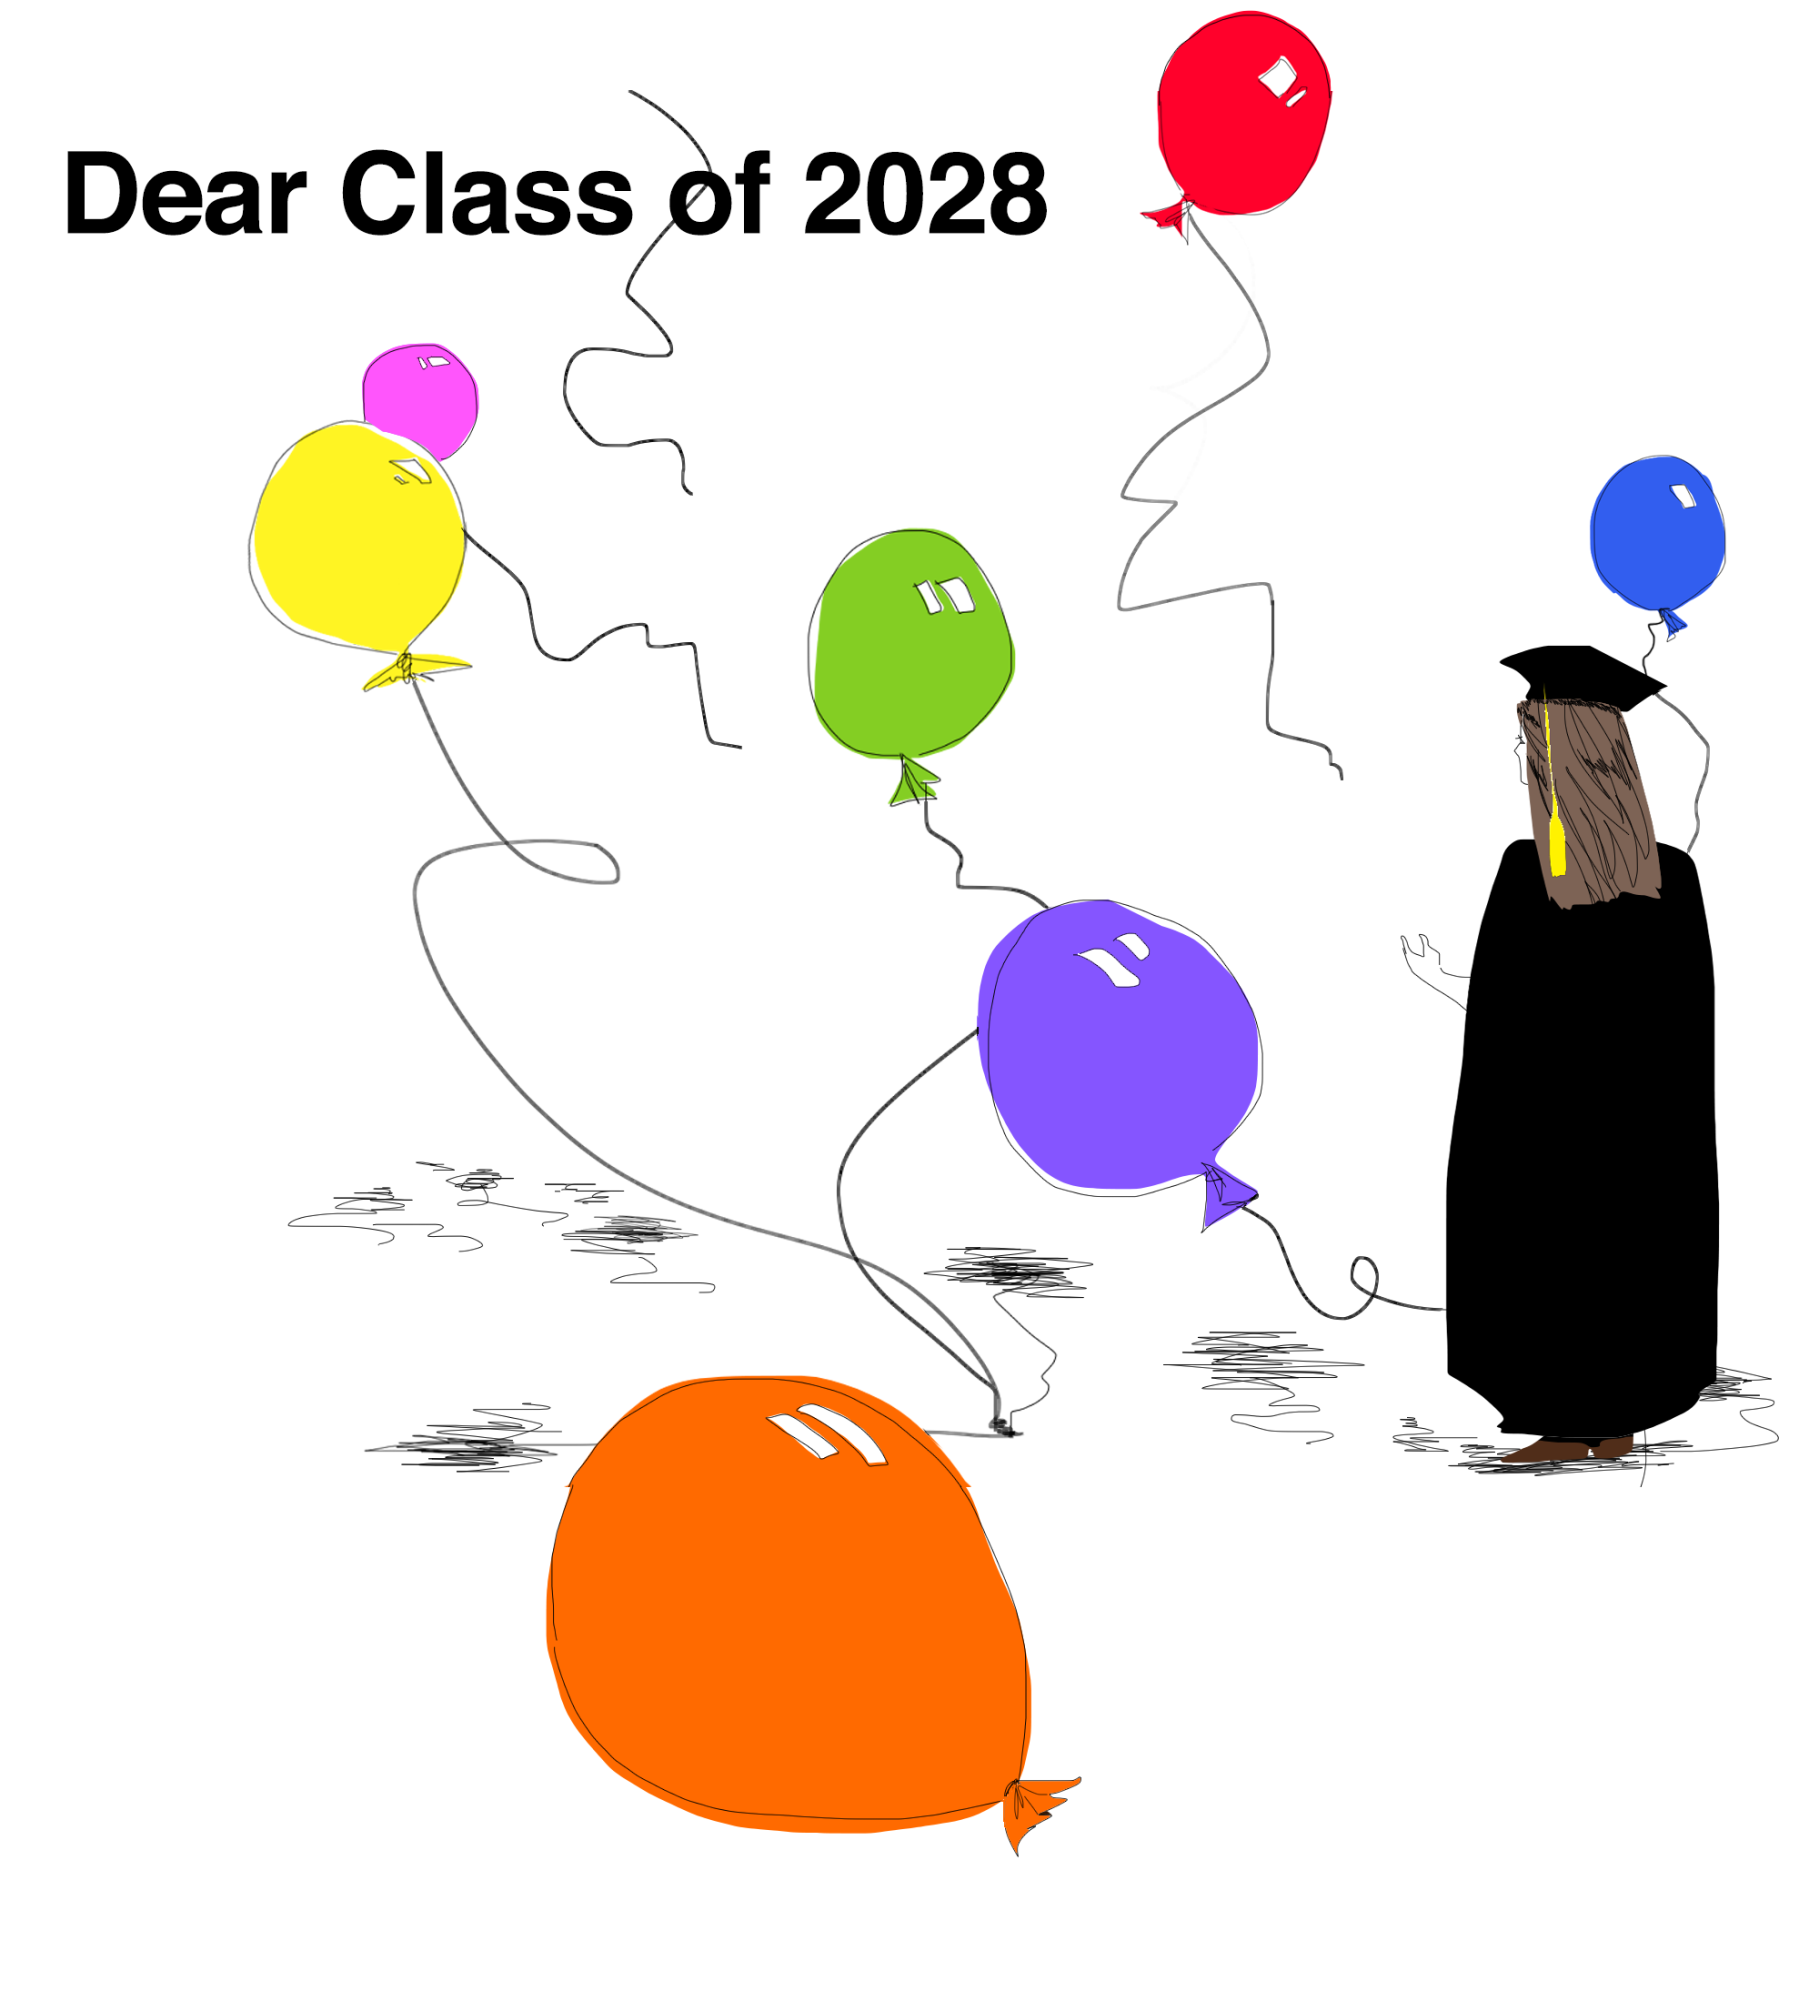 Editorial: Dear Class of 2028